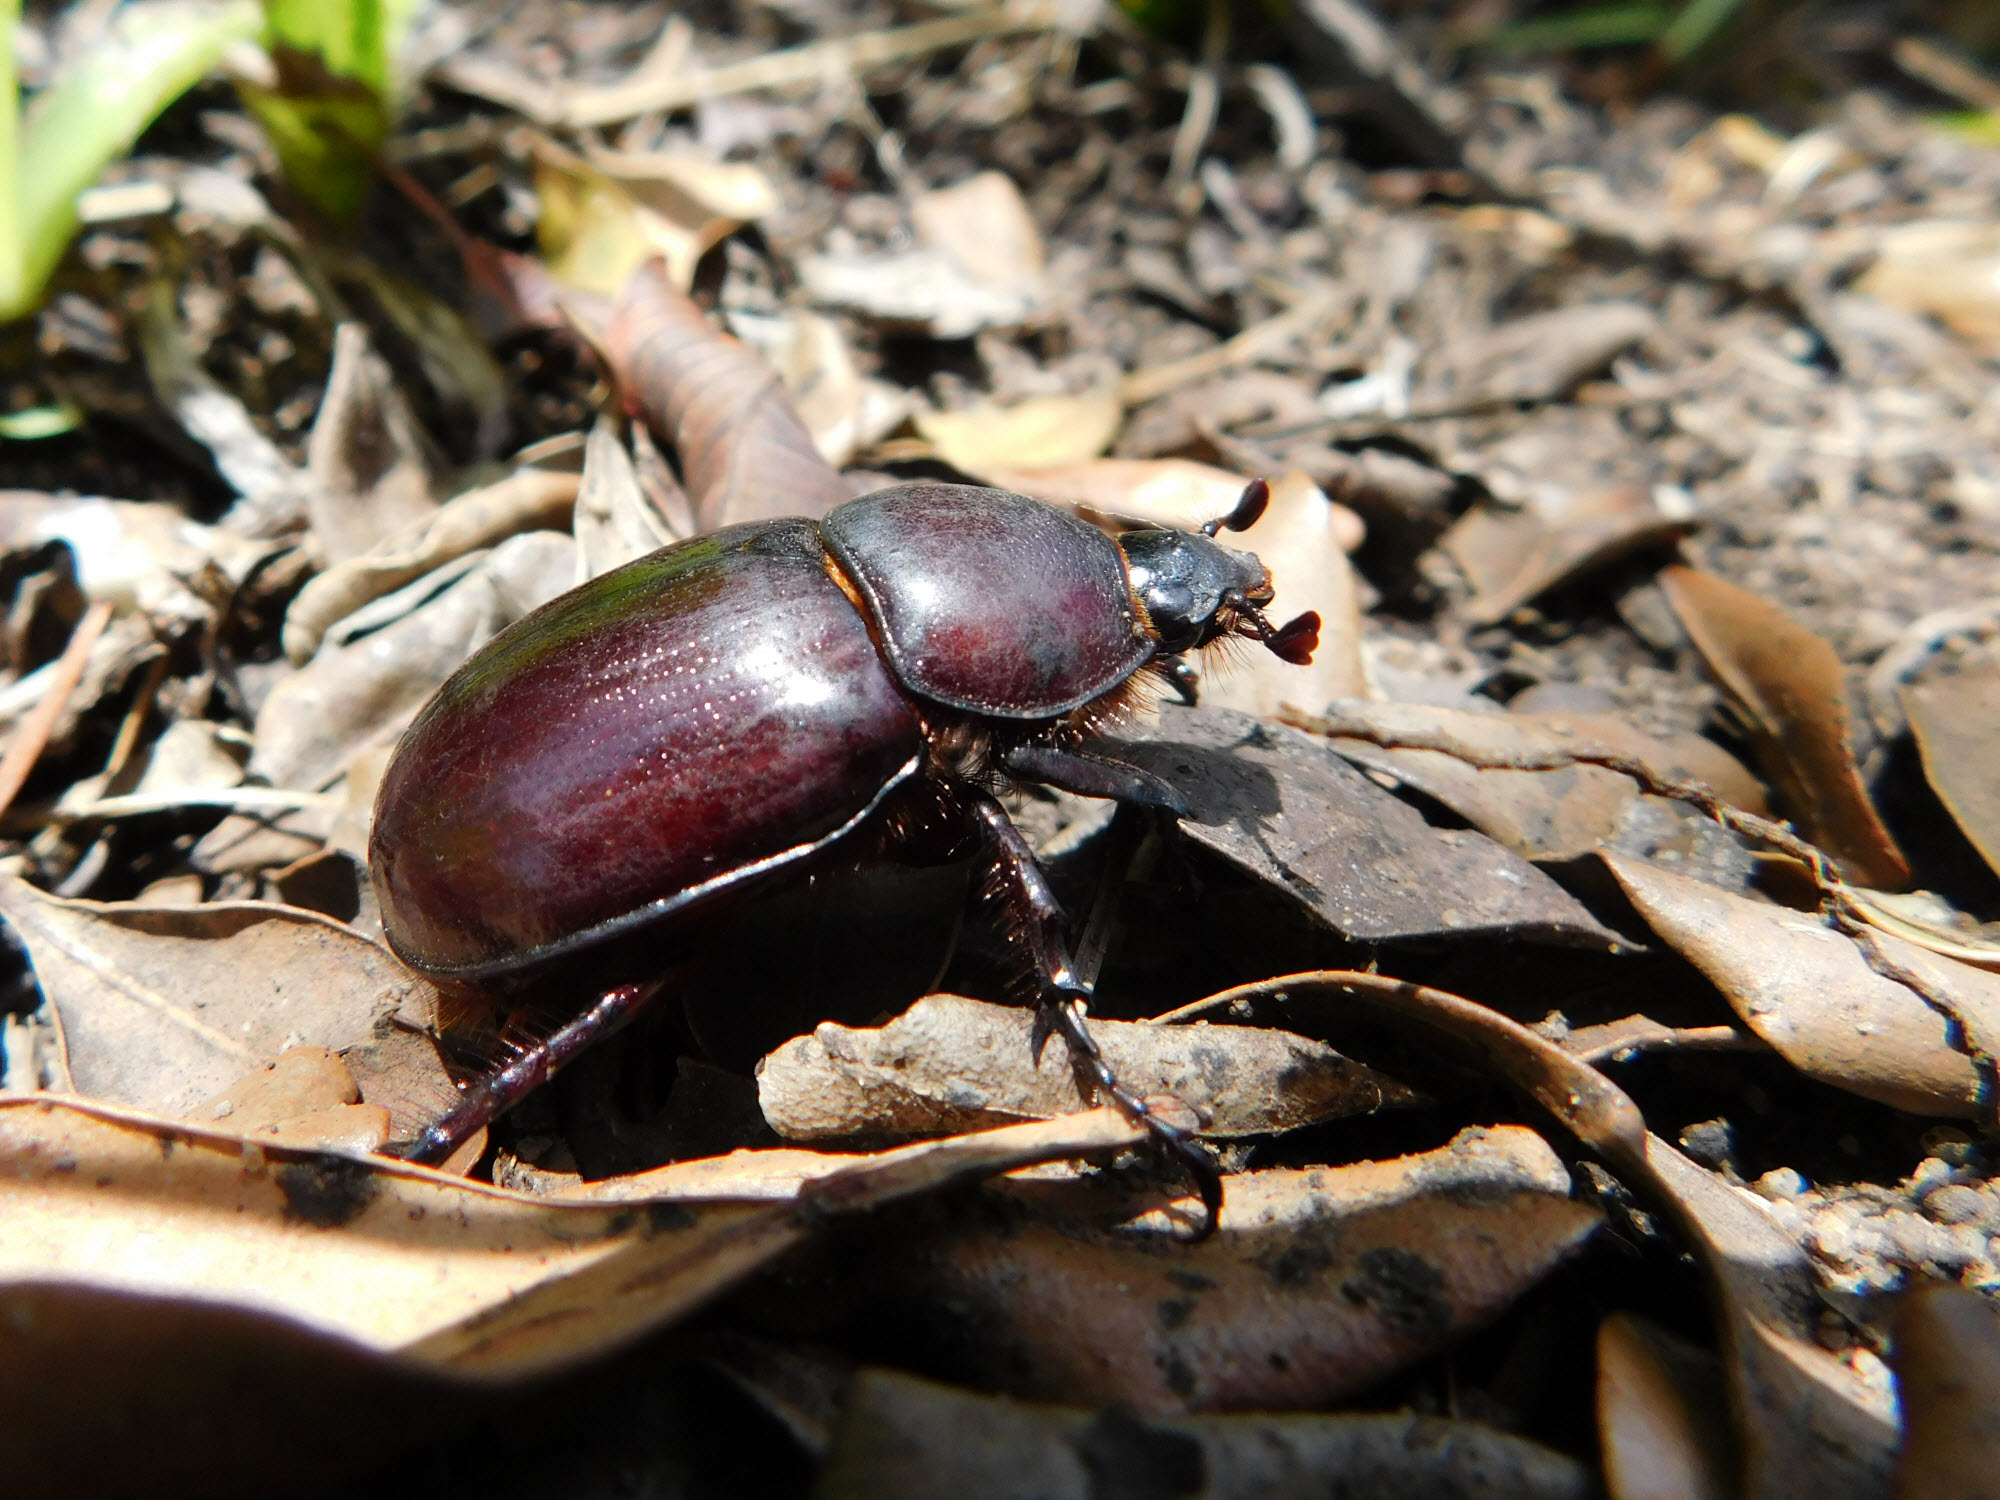 Brown beetle enjoying the sun